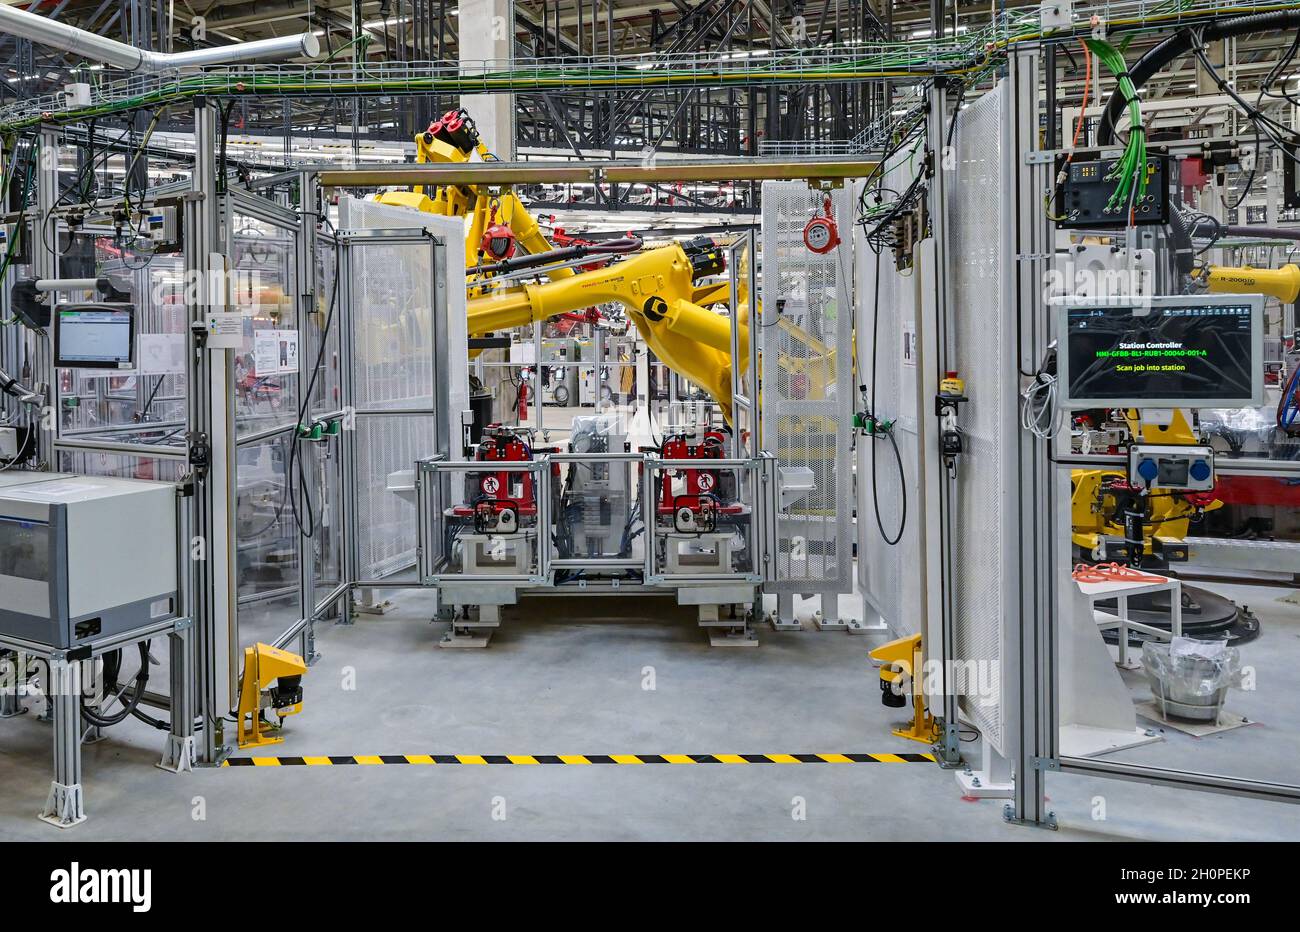 09 octobre 2021, Brandebourg, Grünheide: Des robots sont vus dans la production d'un modèle y de Tesla à la journée ouverte dans une salle de production du Gigalactory de Tesla.À Grünheide, à l'est de Berlin, les premiers véhicules seront en sortie de la chaîne de production à partir de la fin de 2021.La société américaine prévoit de construire environ 500,000 modèles Ys ici chaque année.Photo: Patrick Pleul/dpa-Zentralbild/ZB Banque D'Images